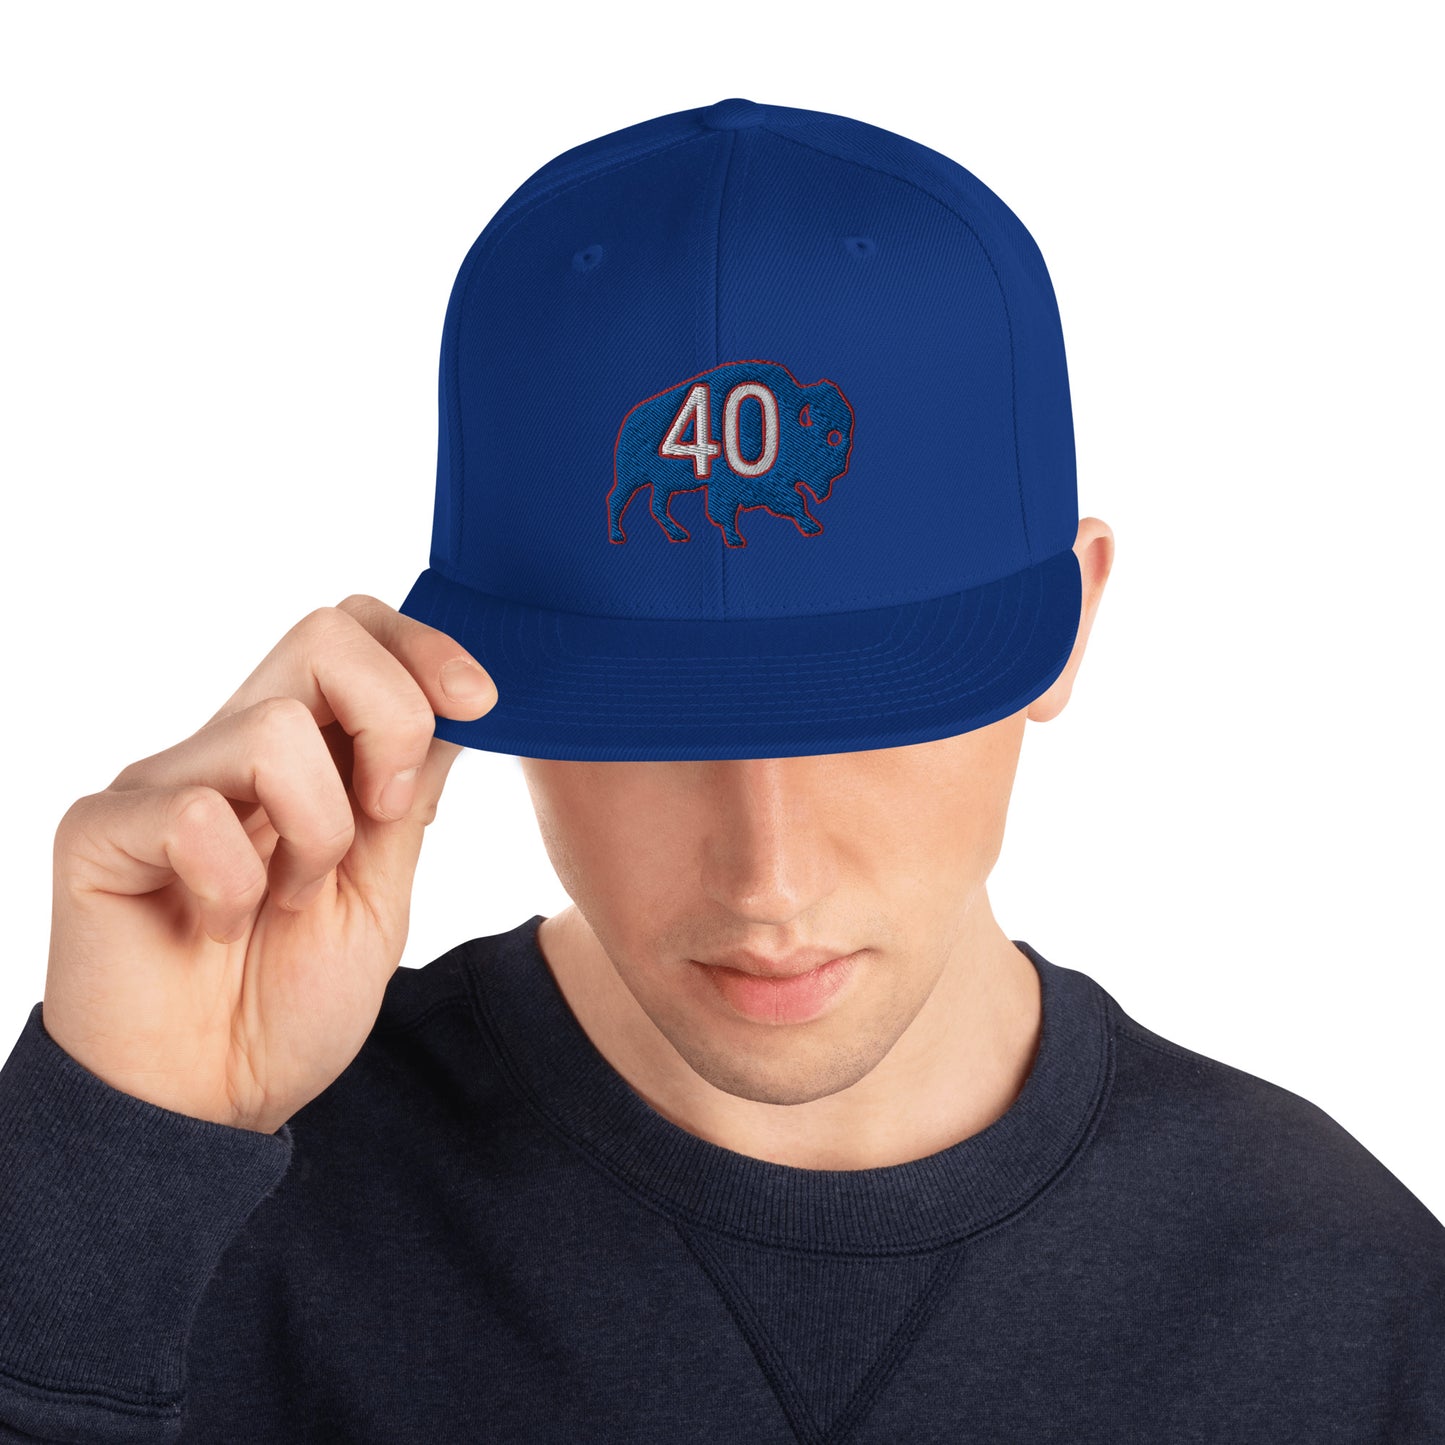 Von Miller 40 Hat / Happy Birthday Von 40 / Buffalo Bills 40 Snapback